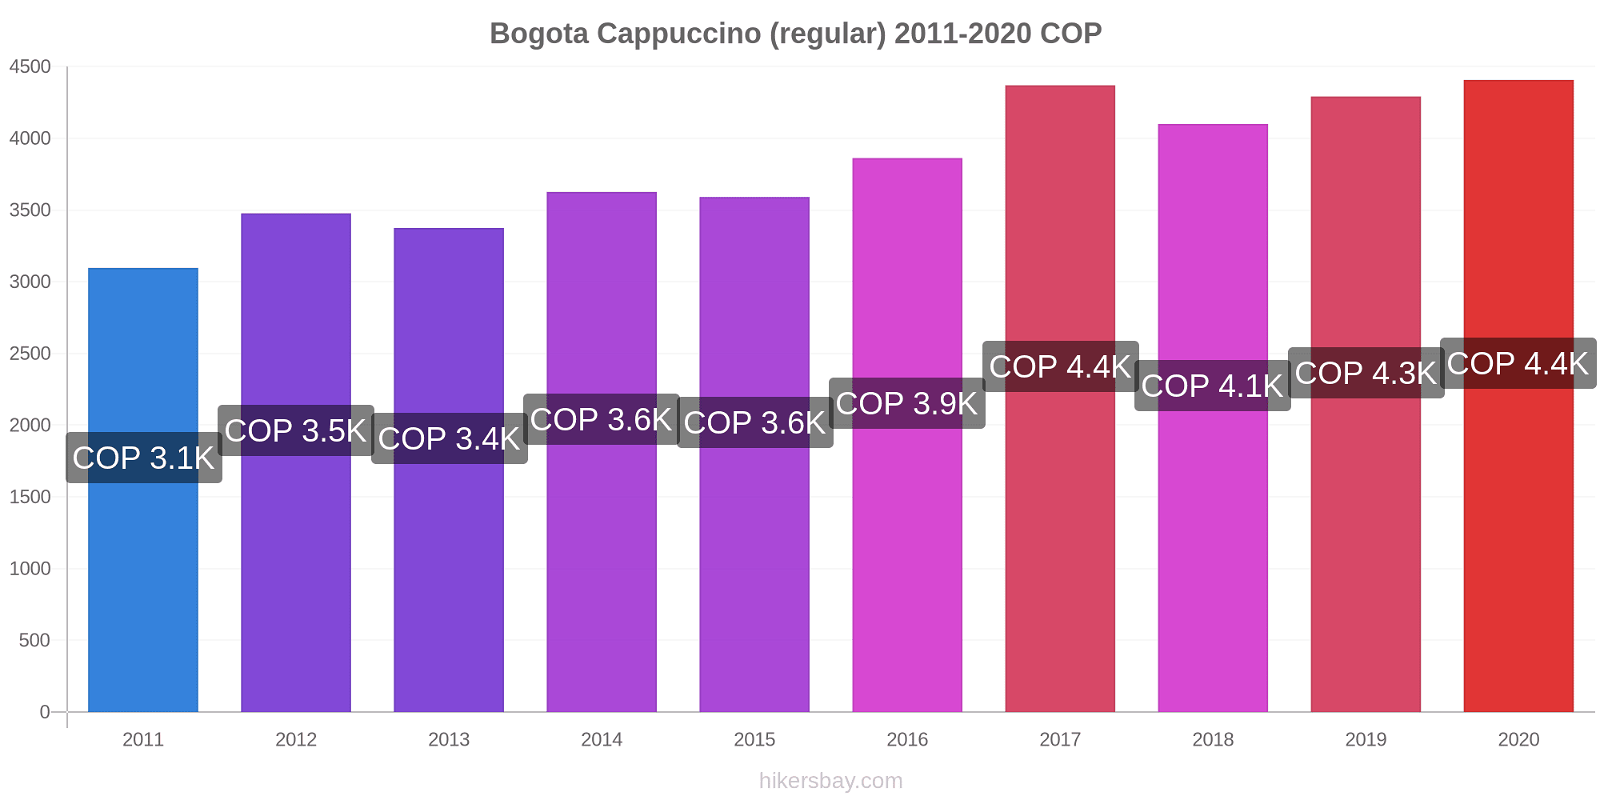 Bogota price changes Cappuccino (regular) hikersbay.com